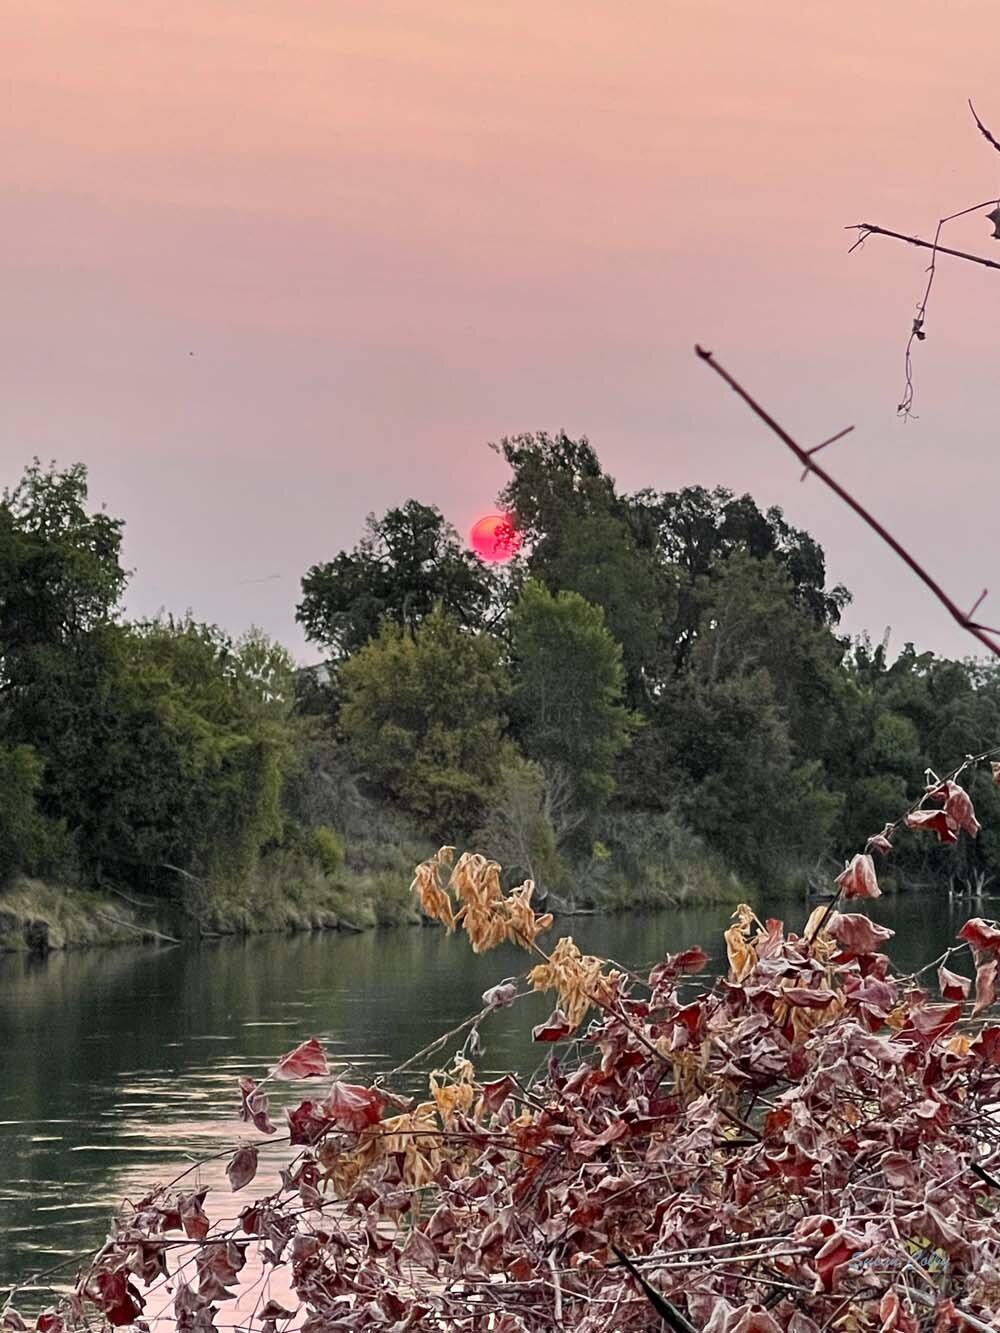 smoky sunrise over Sacramento River